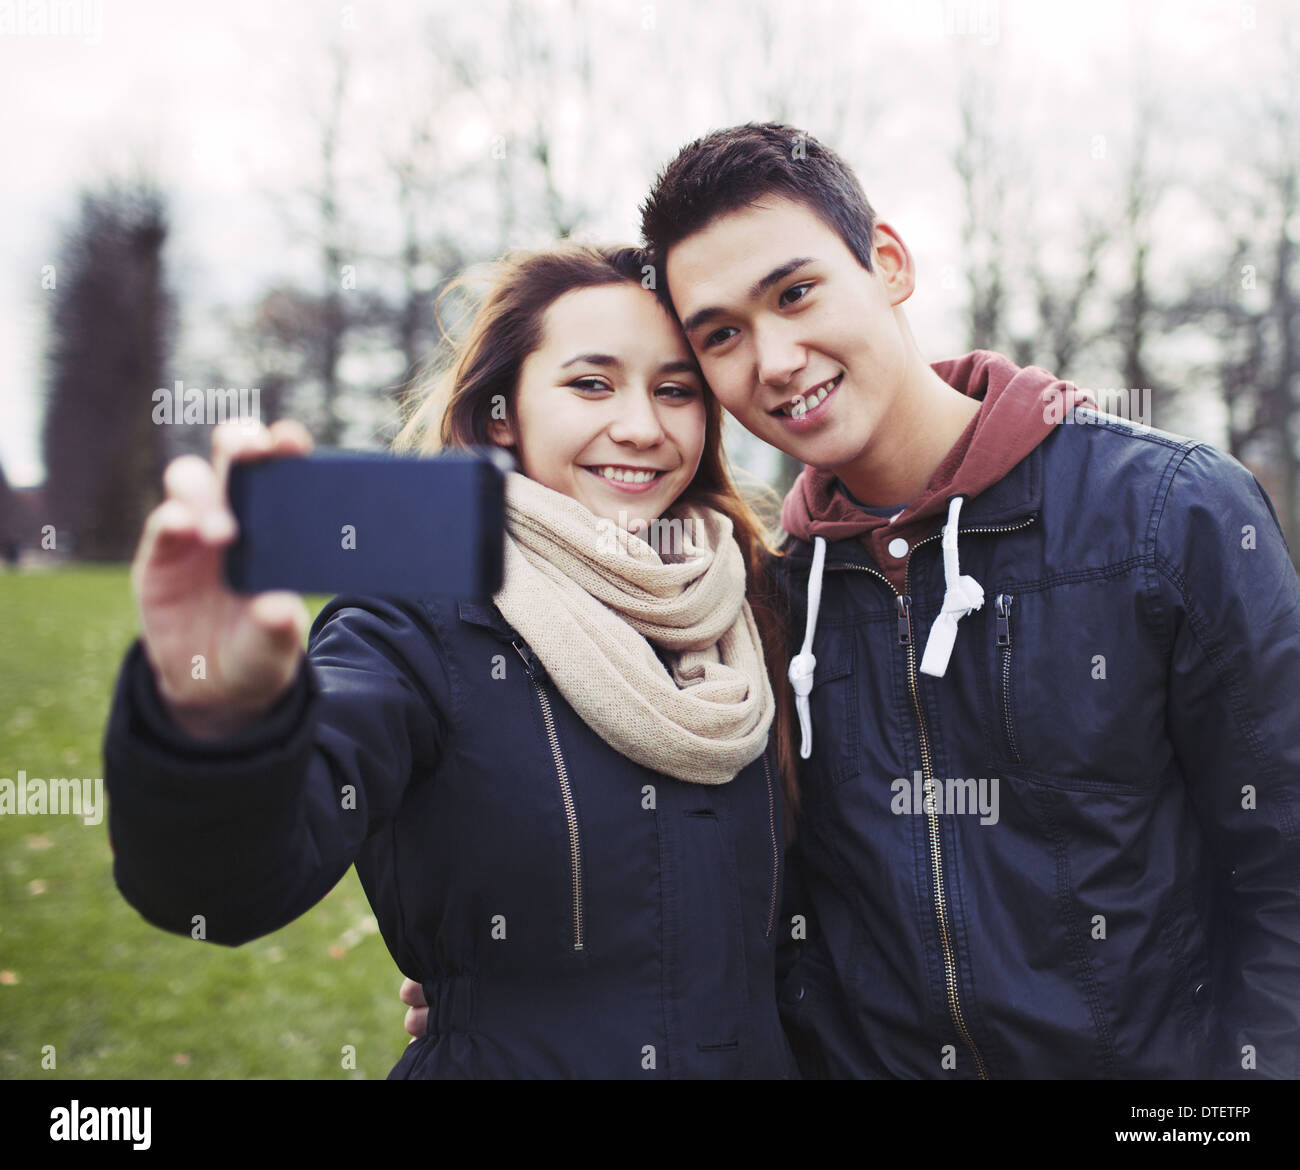 Süße junge Paar suchen glücklich während des Fotografierens mit einem Smartphone im Park. Gemischte Rassen Teenager-Jungen und Mädchen in der Liebe Stockfoto